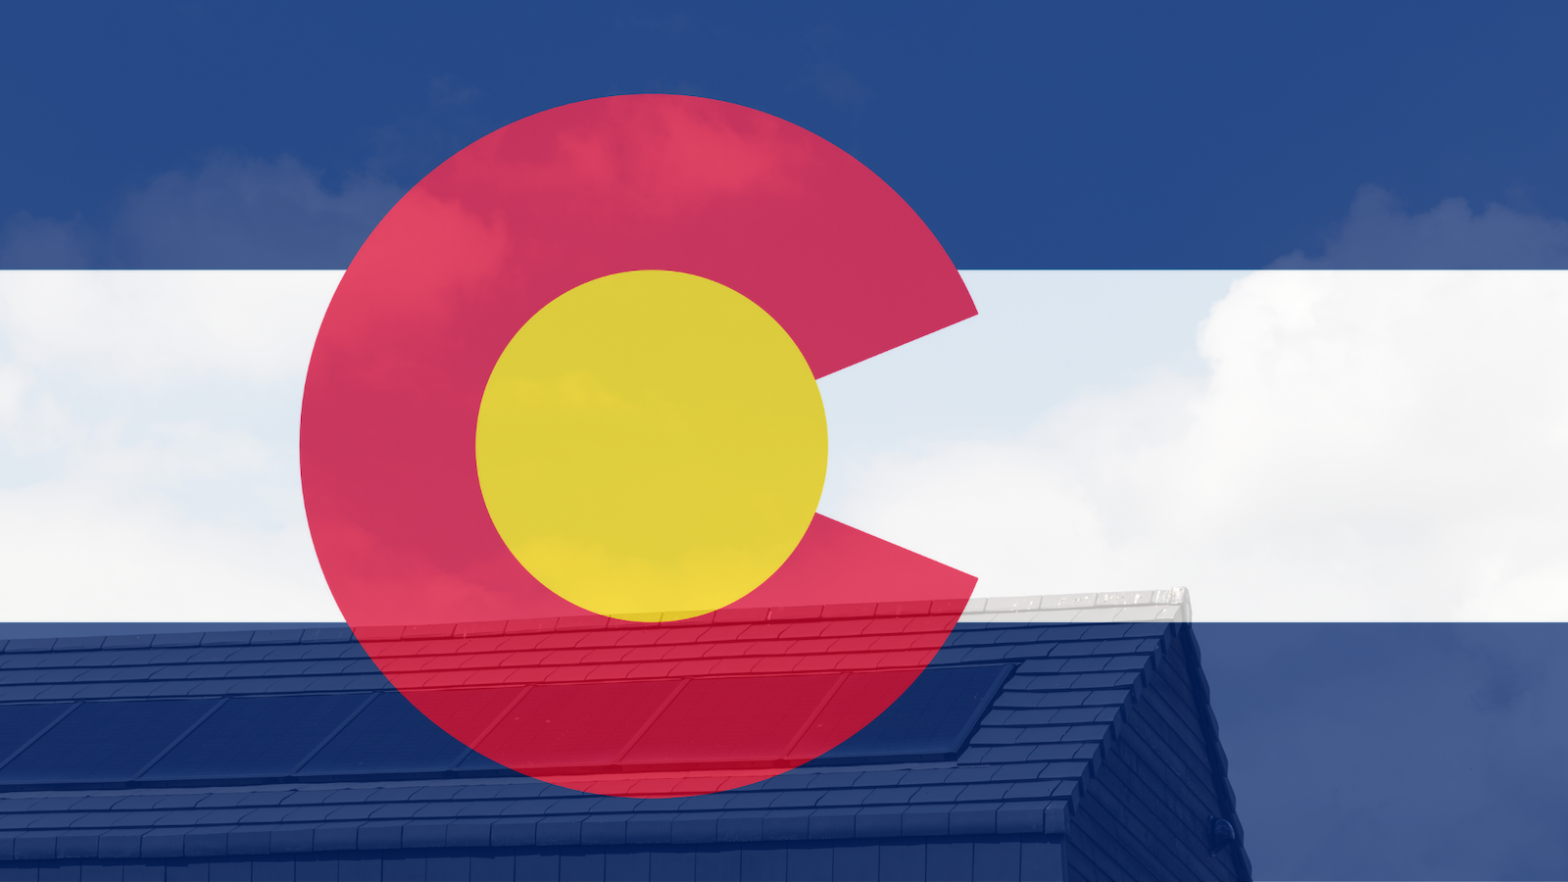 Colorado flag overlaid on house with solar panels